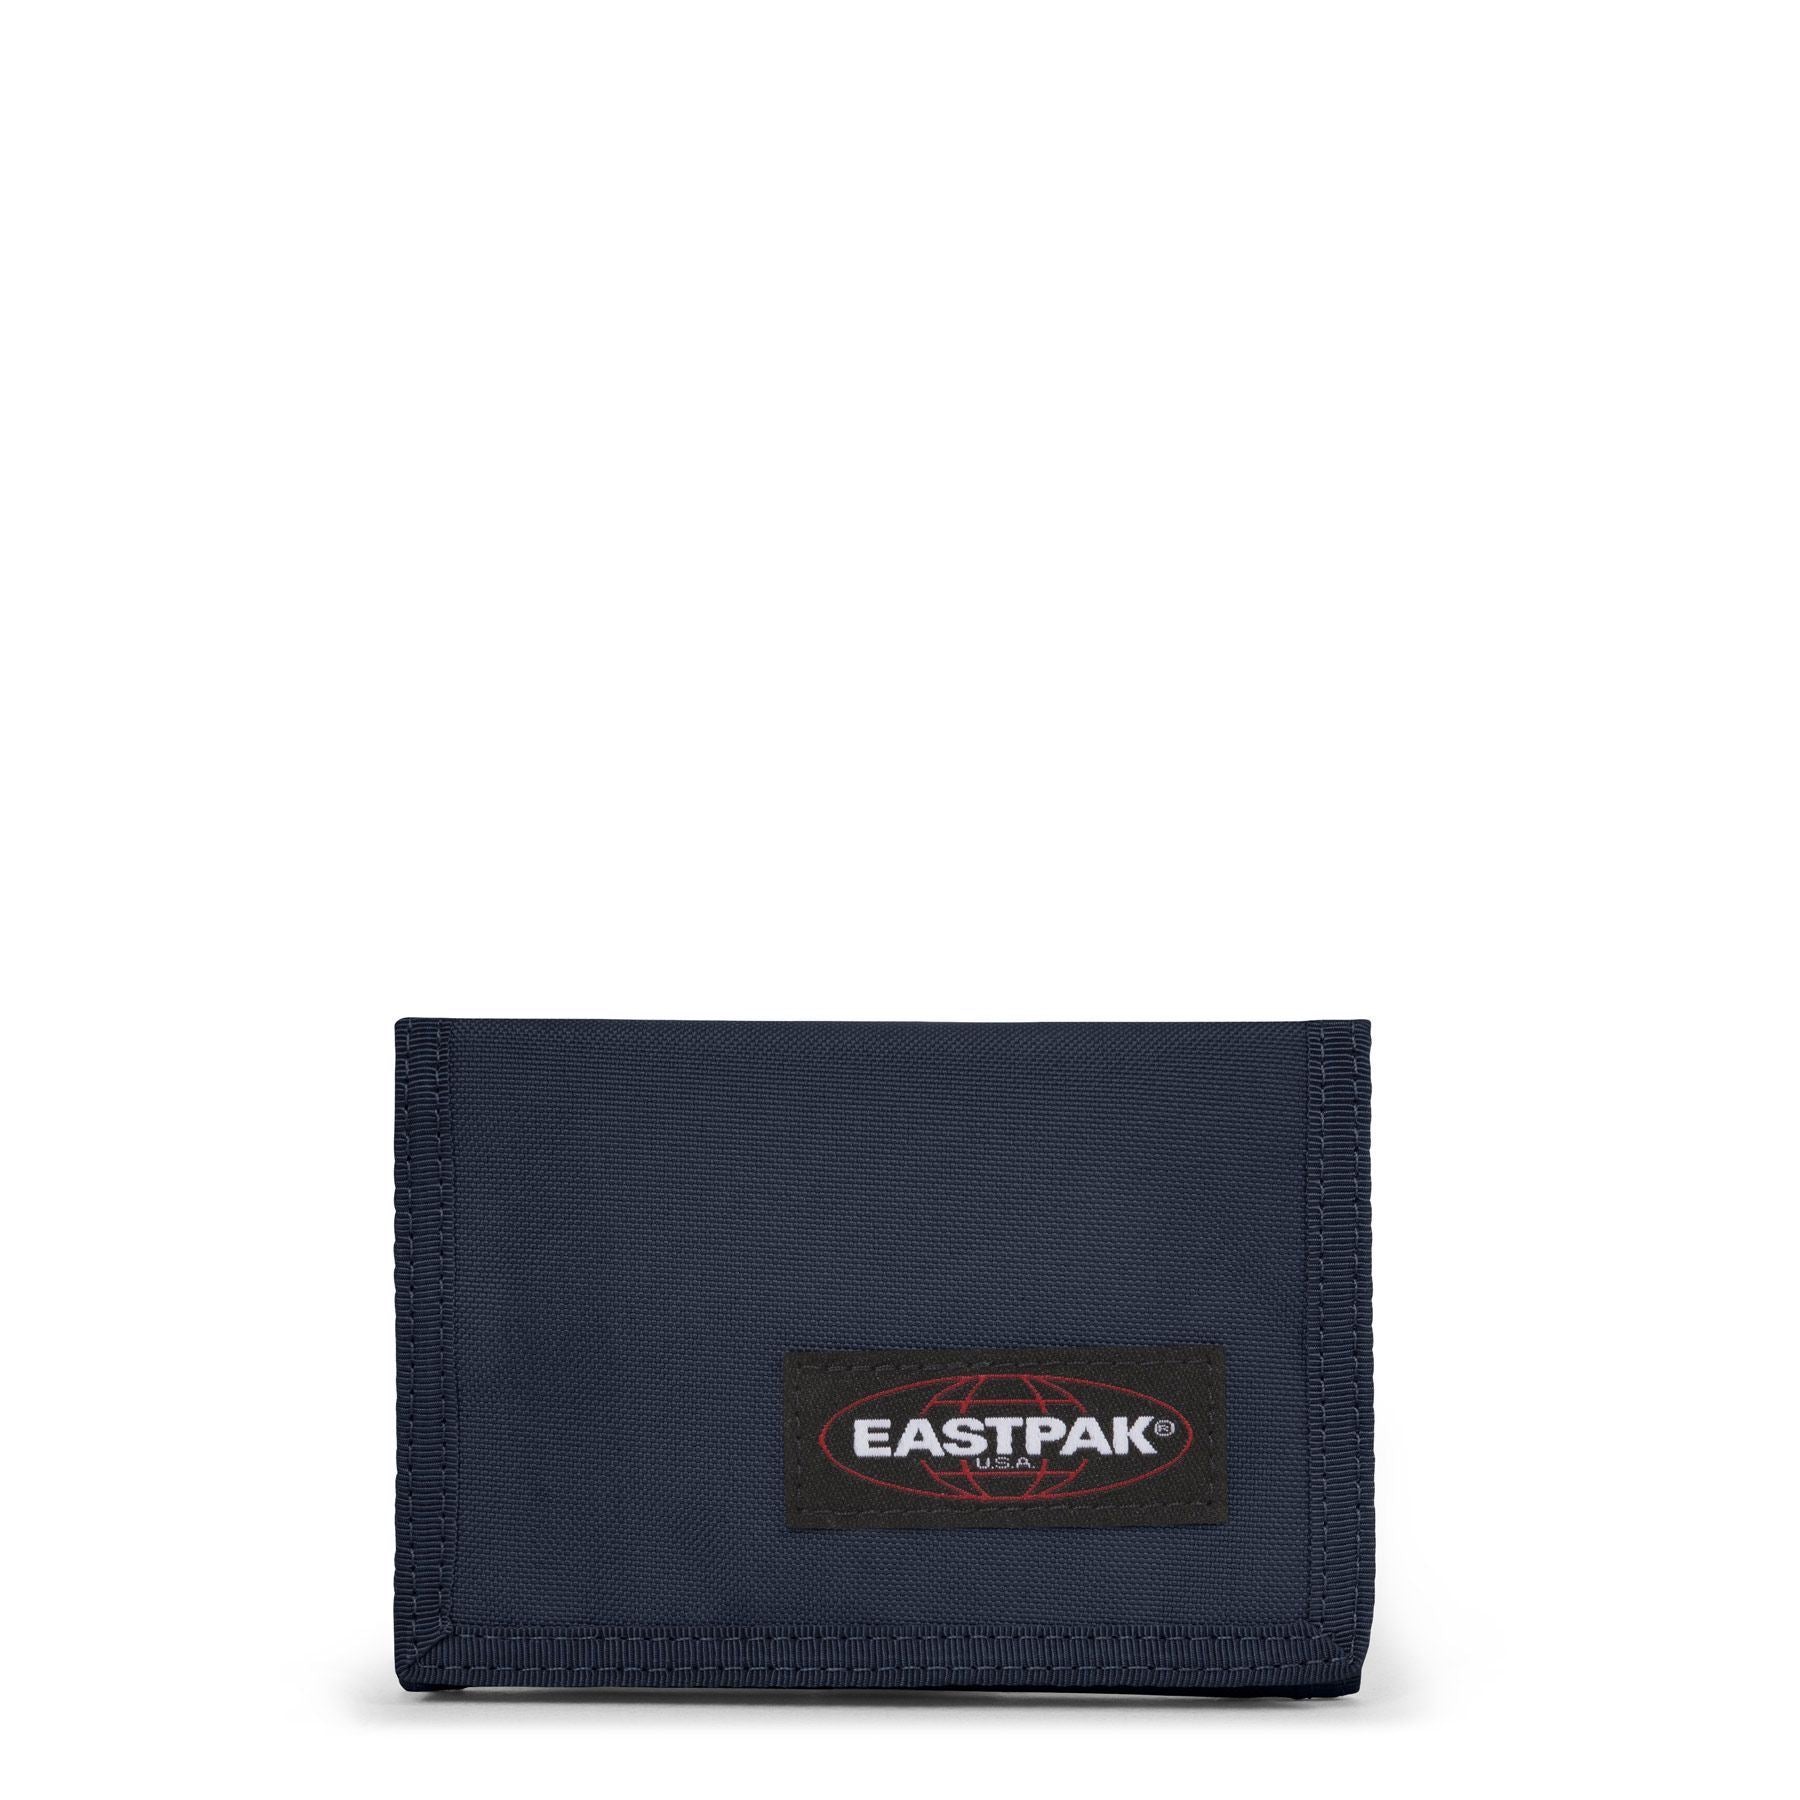 Eastpak Crew Single ארנק בד כחול עמוק